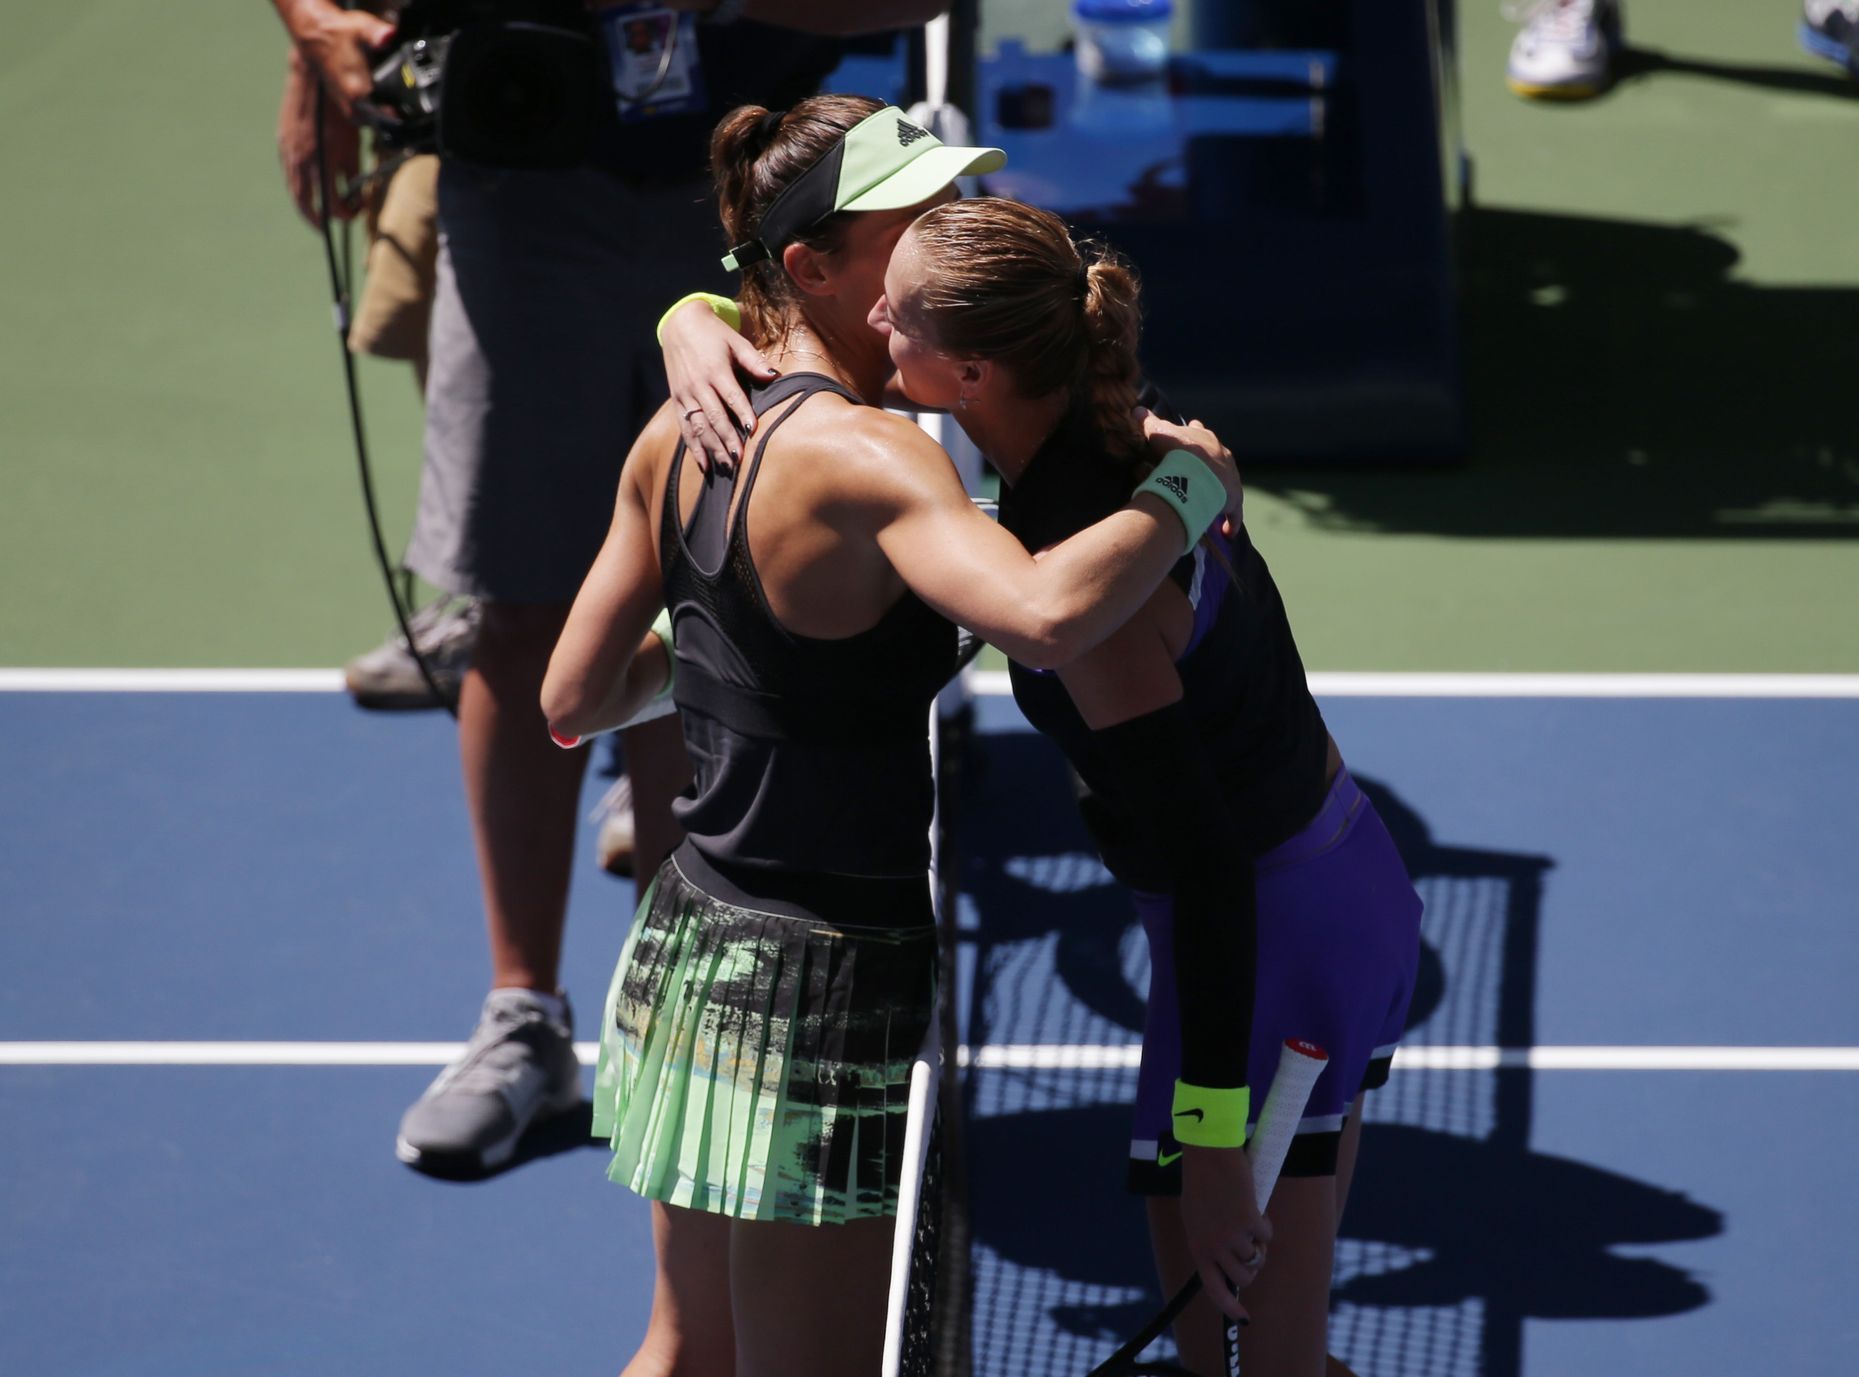 Andrea Petkovicová a Petra Kvitová po zápase 2. kola US Open 2019